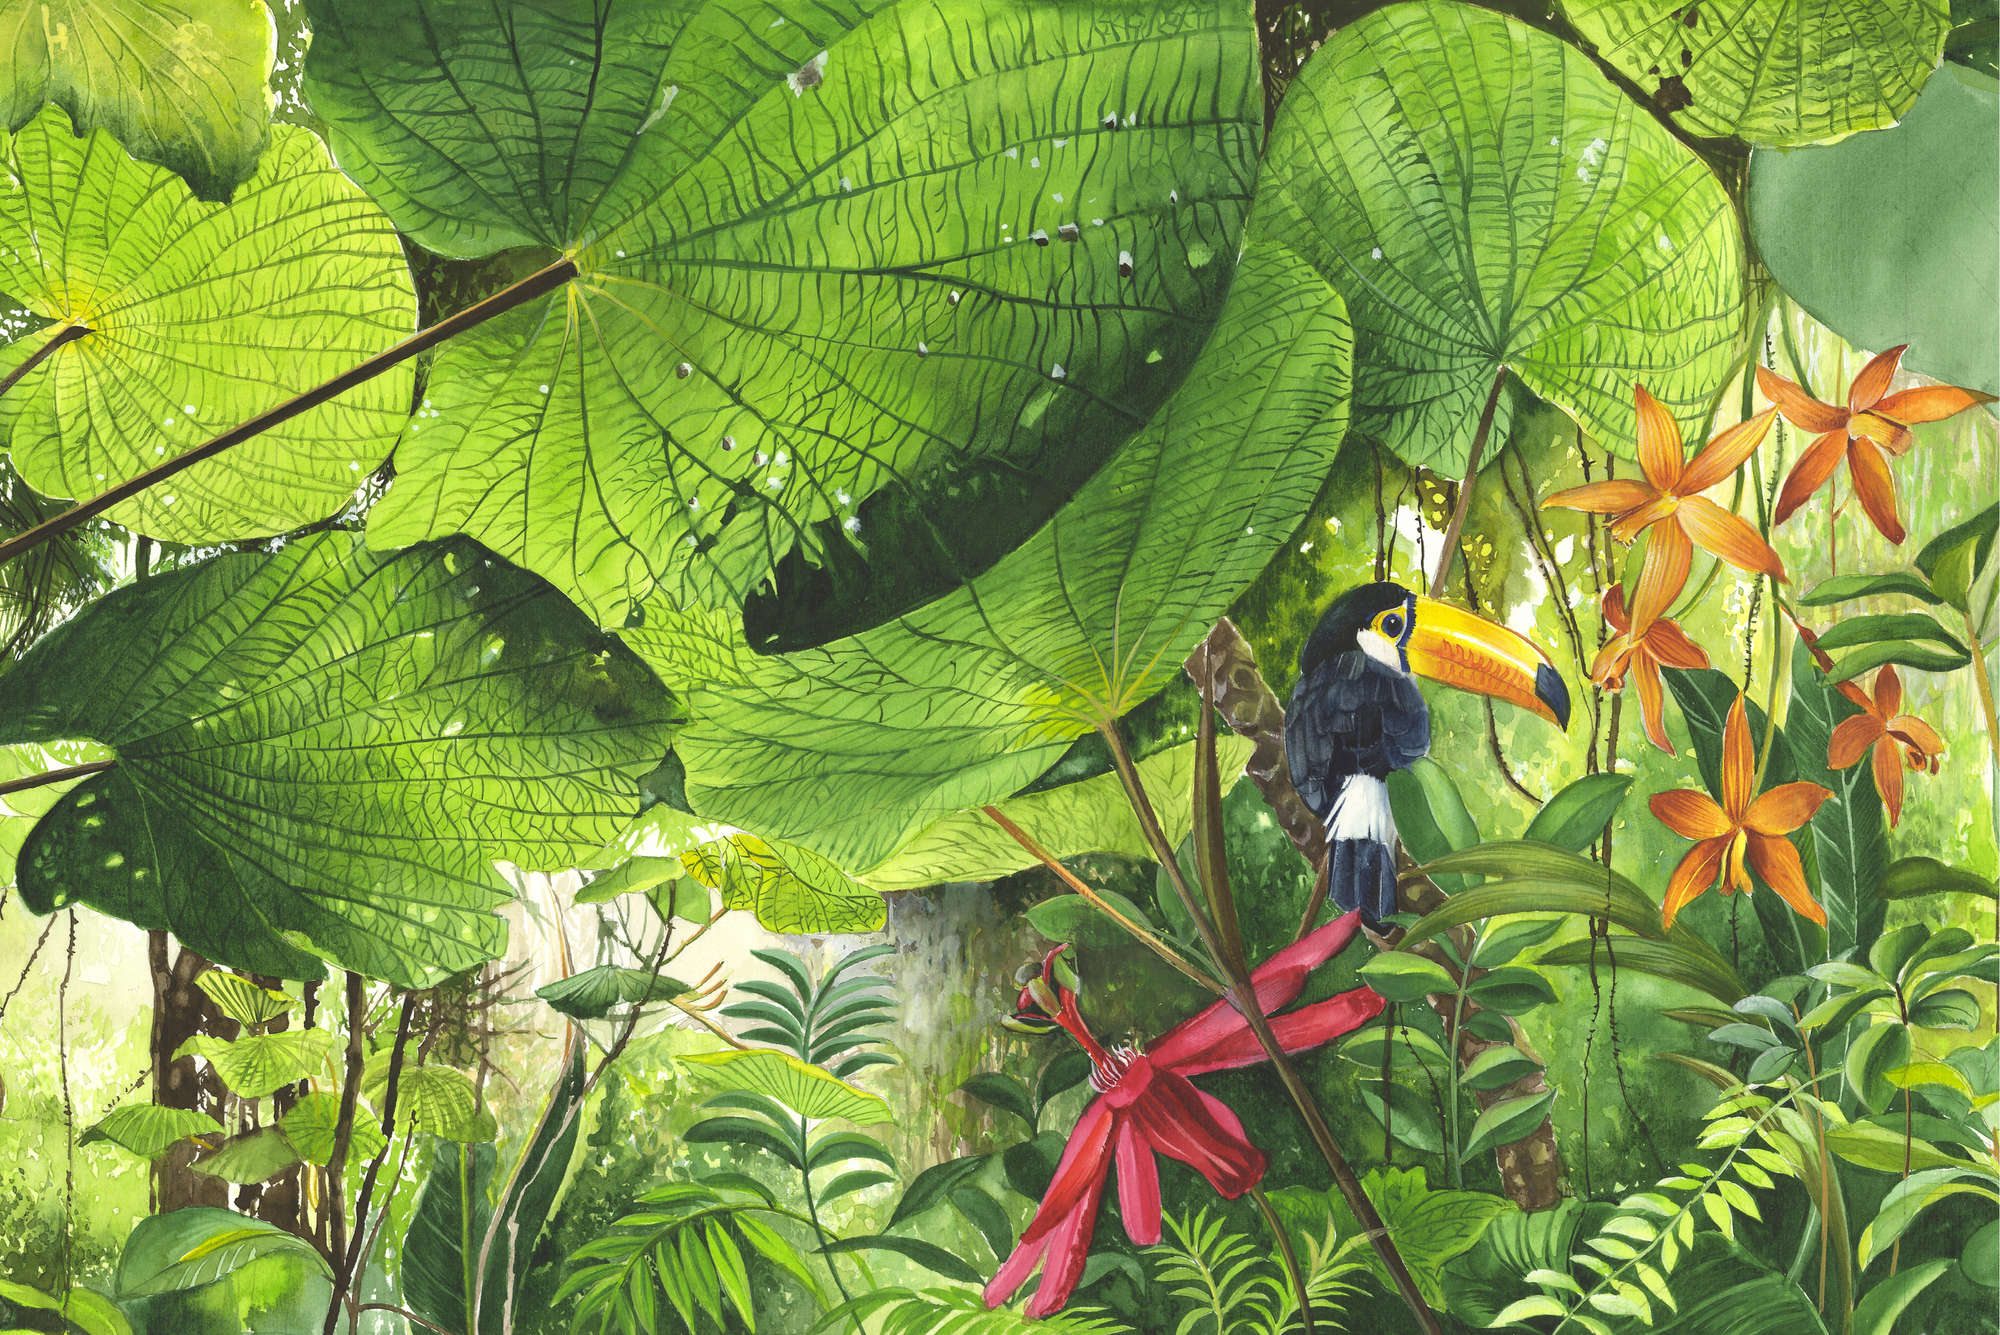             Digital behang jungle met toekan - parelmoer glad vlies
        